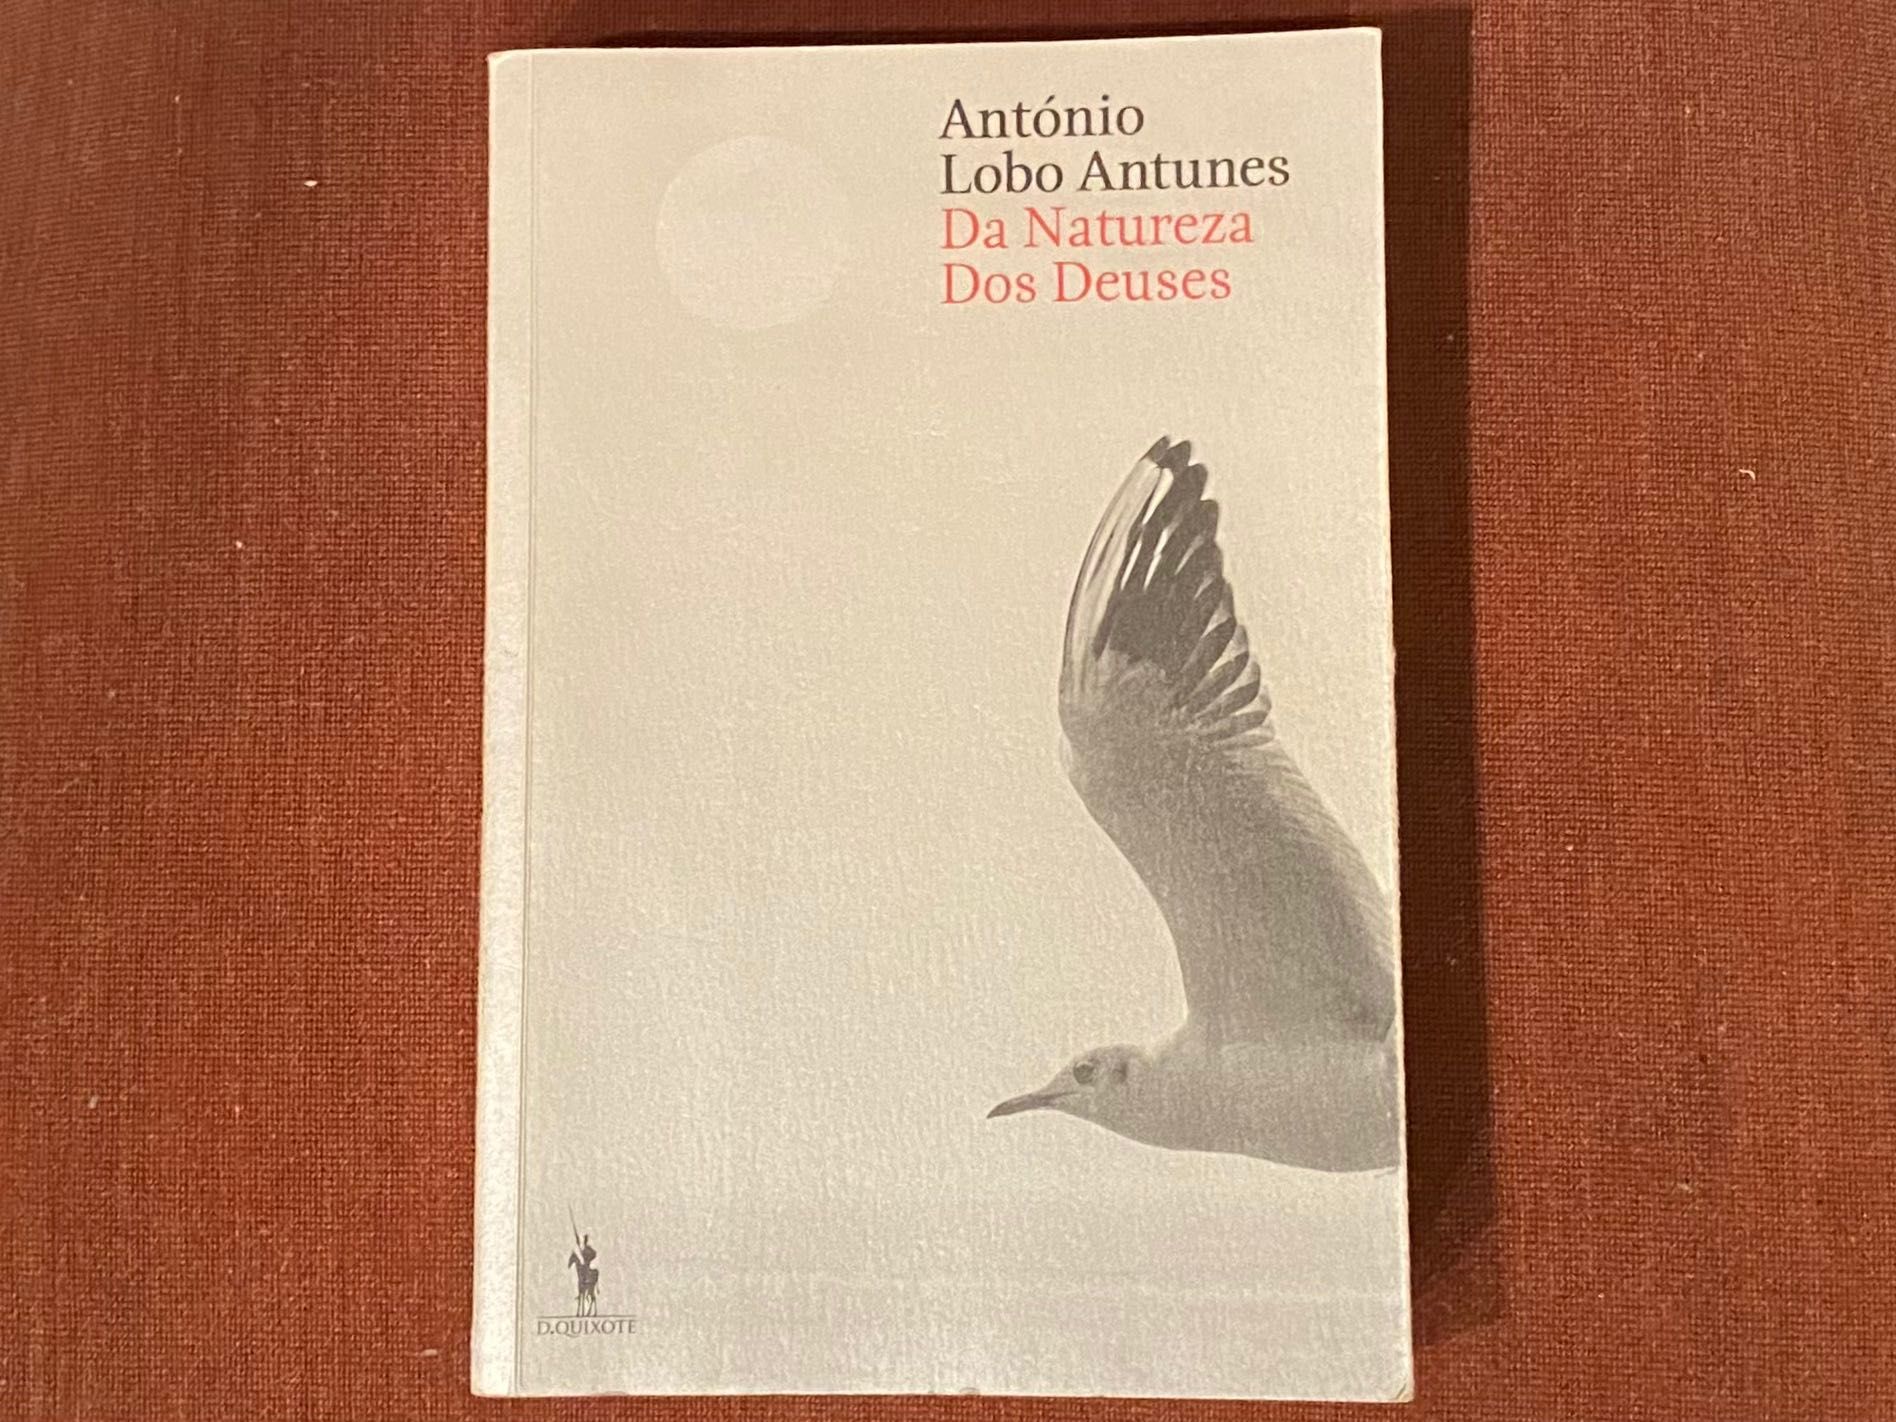 Da Natureza dos Deuses: Romance de António Lobo Antunes